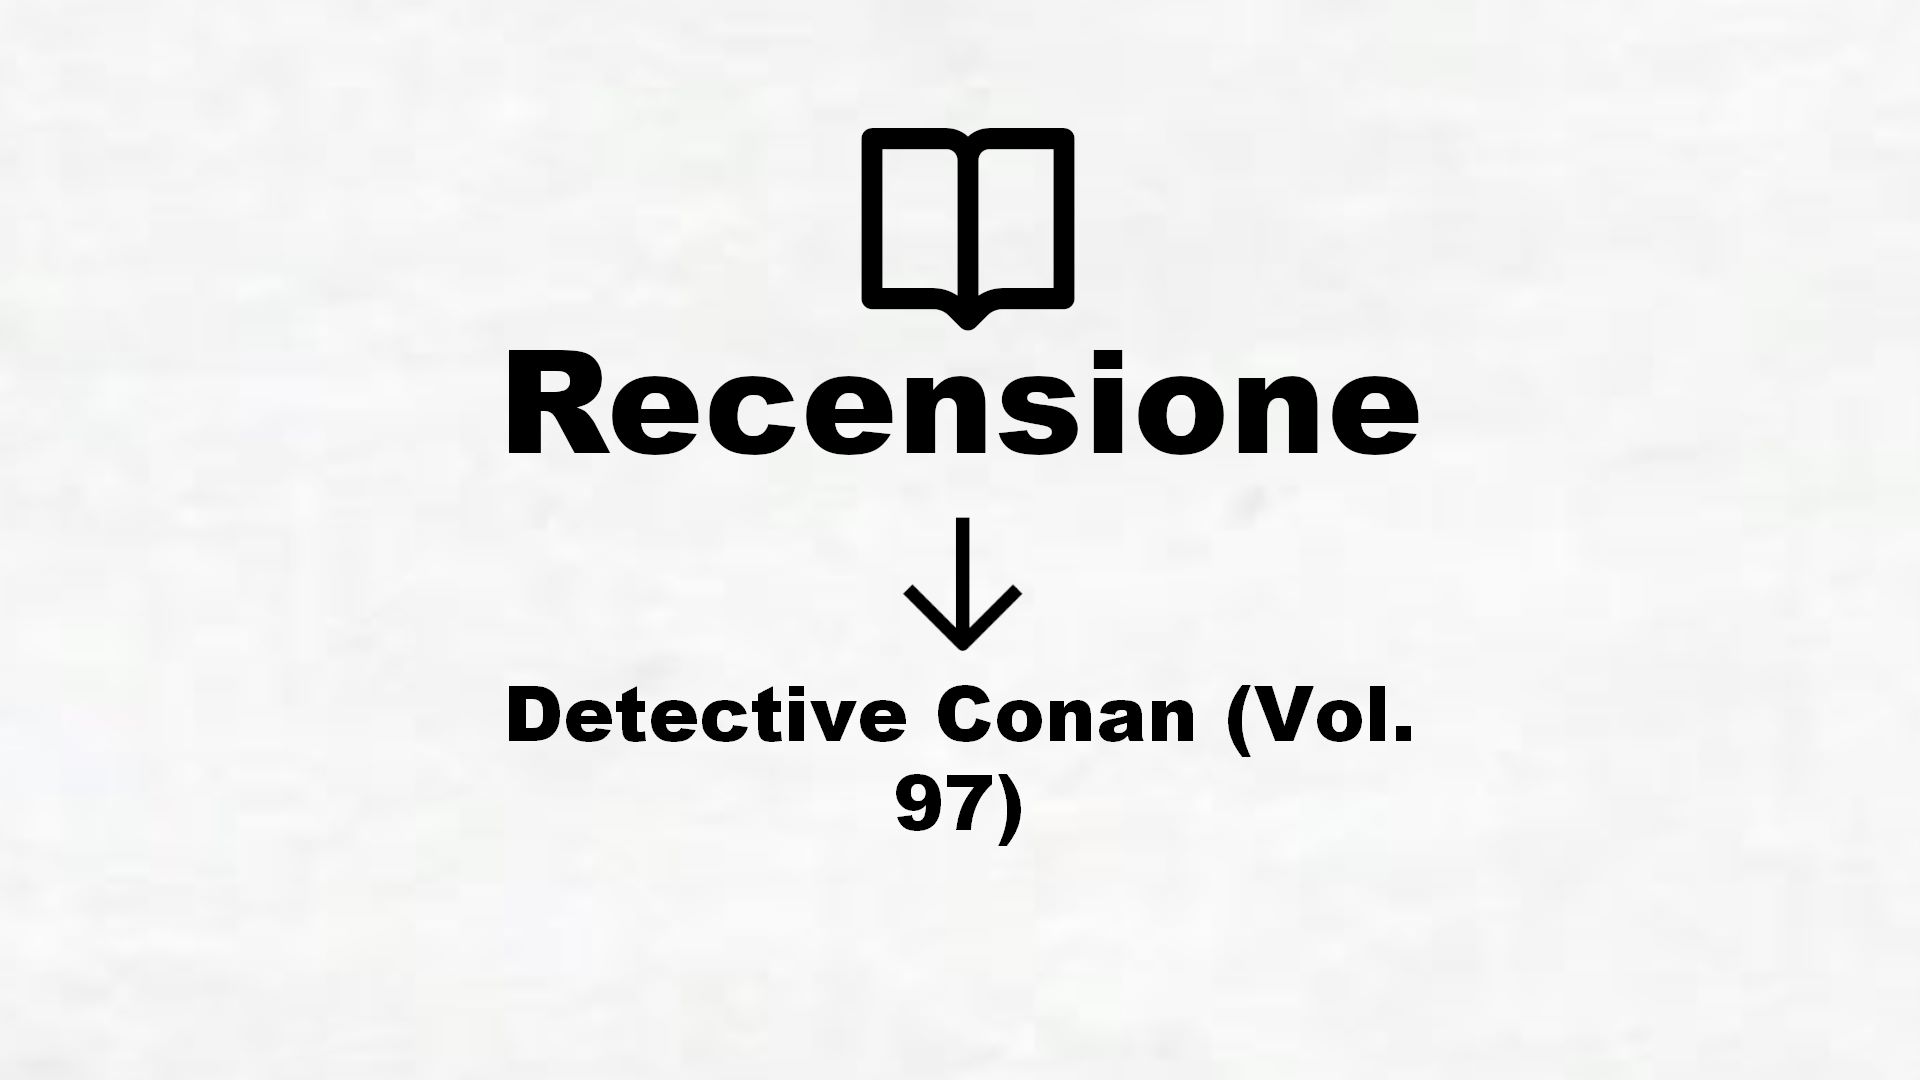 Detective Conan (Vol. 97) – Recensione Libro